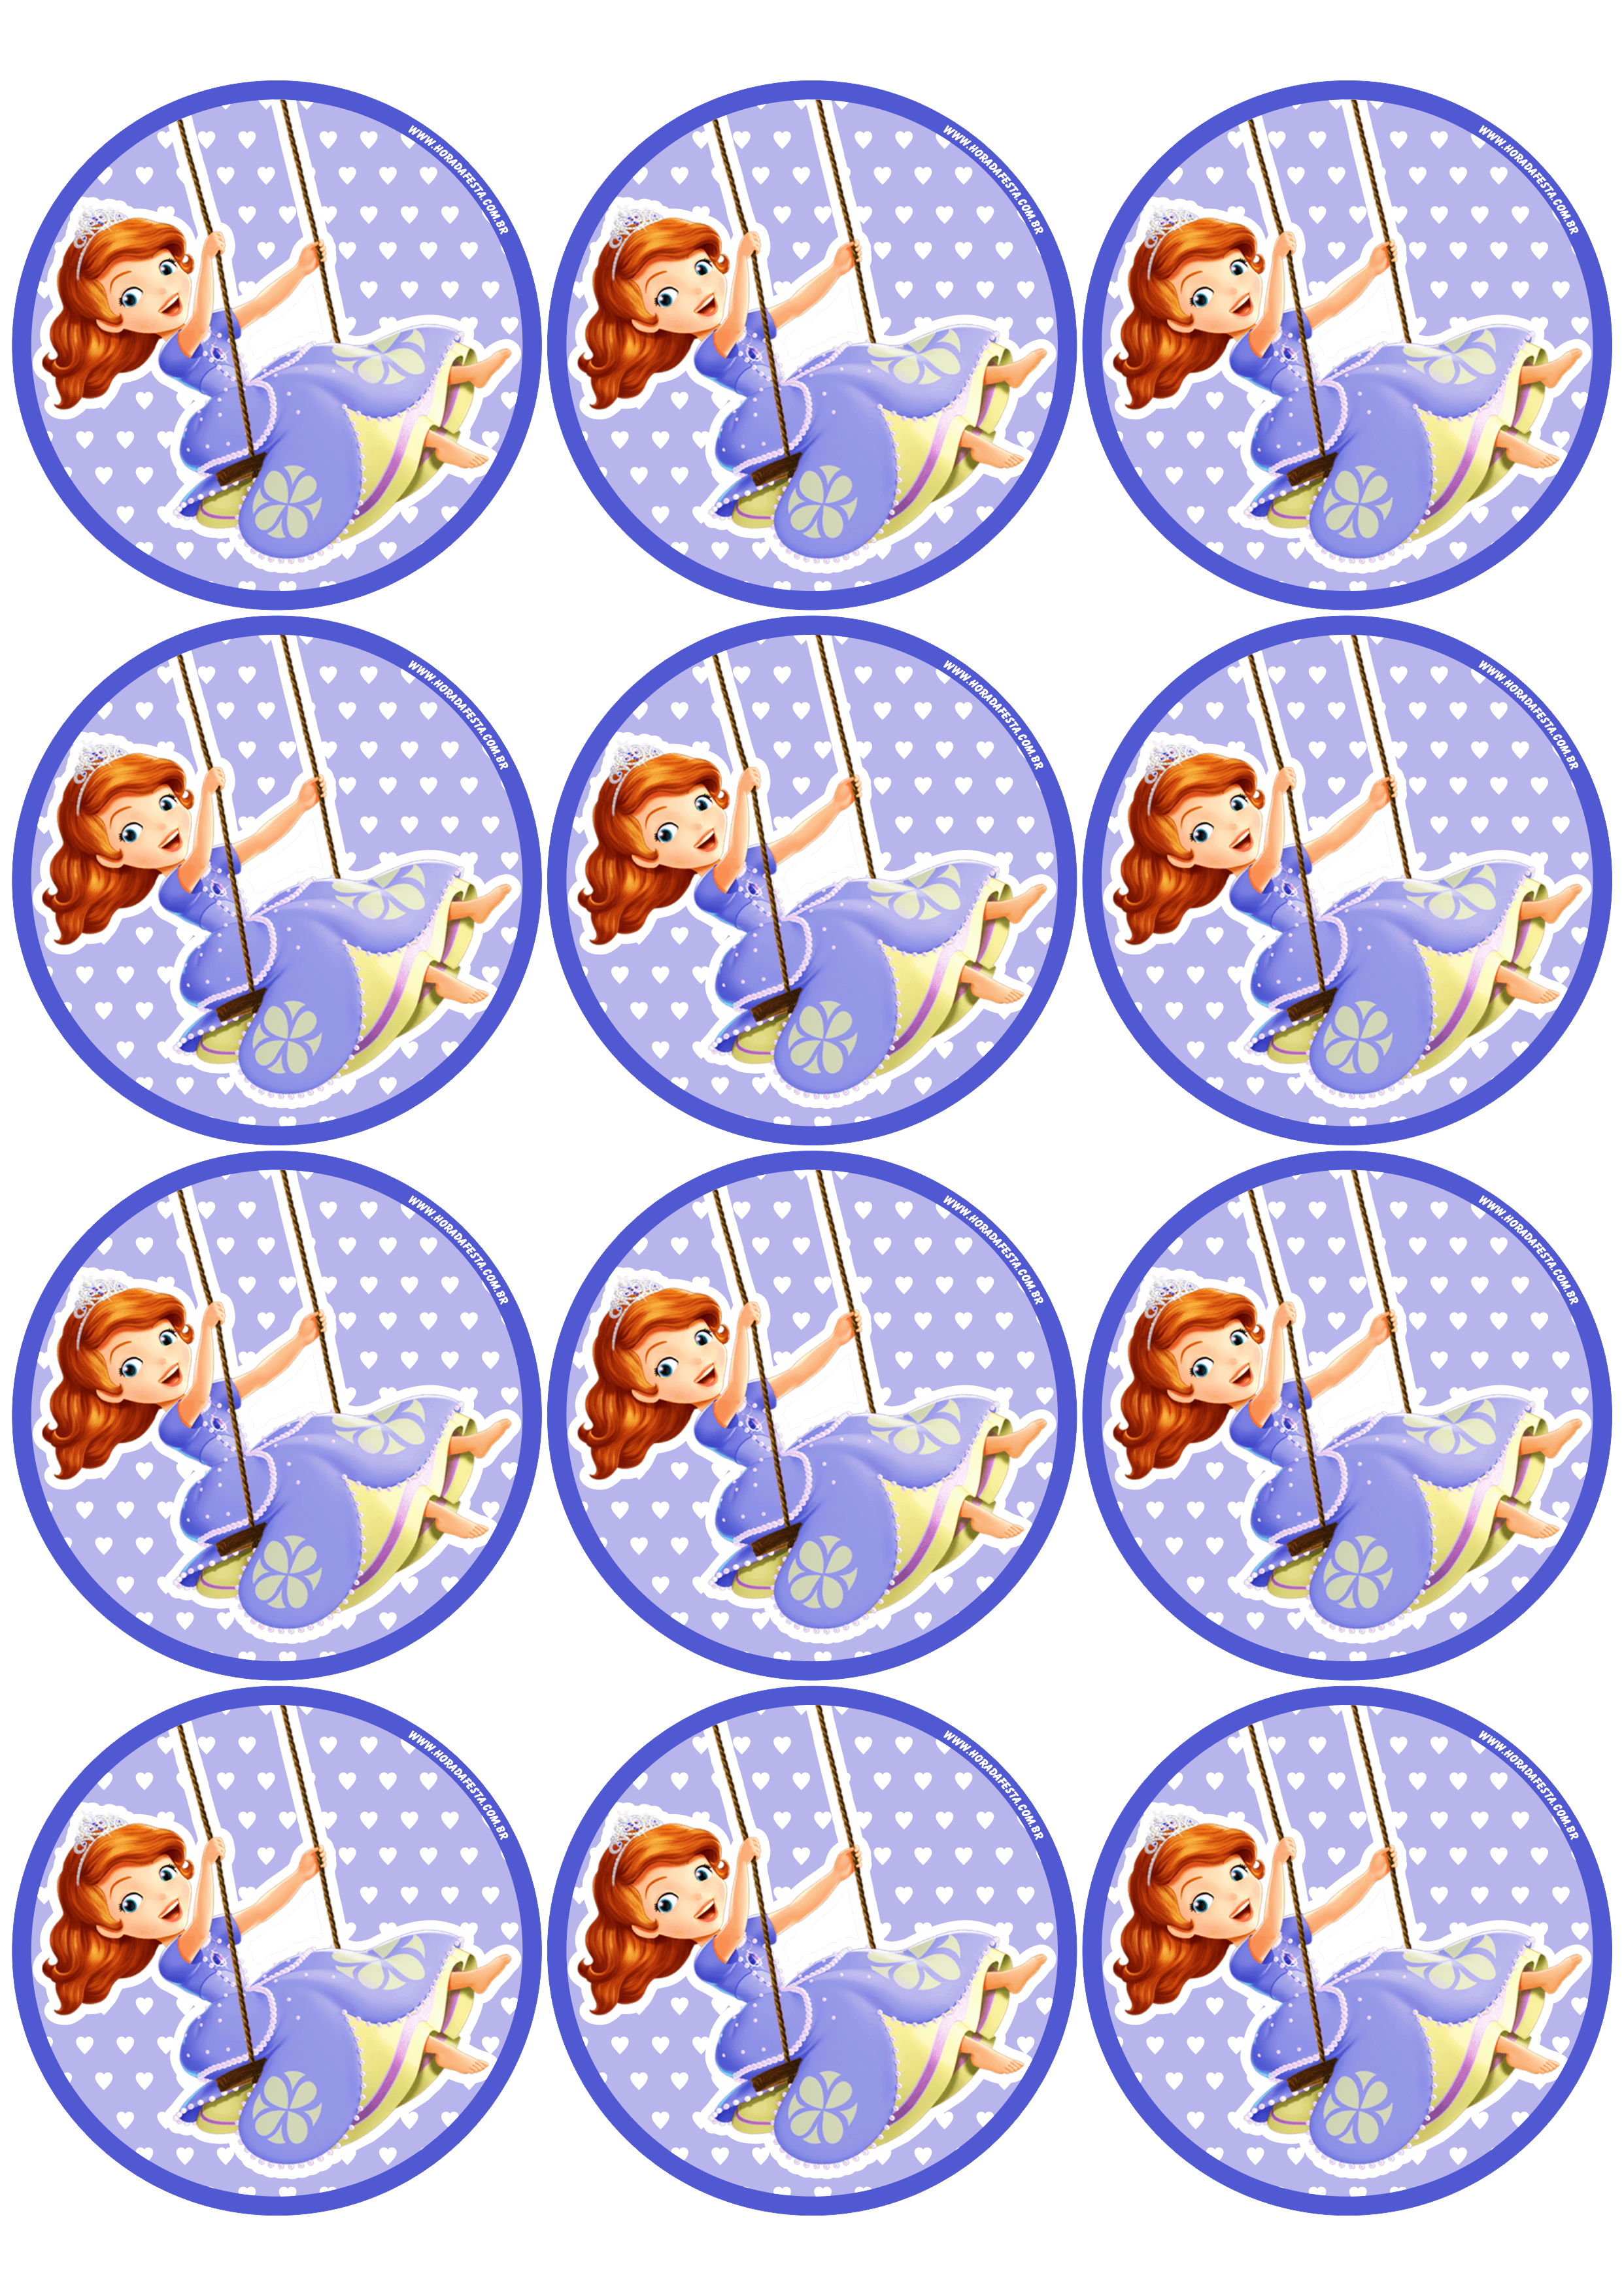 Princesa Sofia adesivo redondo tag sticker painel festa de aniversário infantil menina artigos de papelaria 12 imagens png